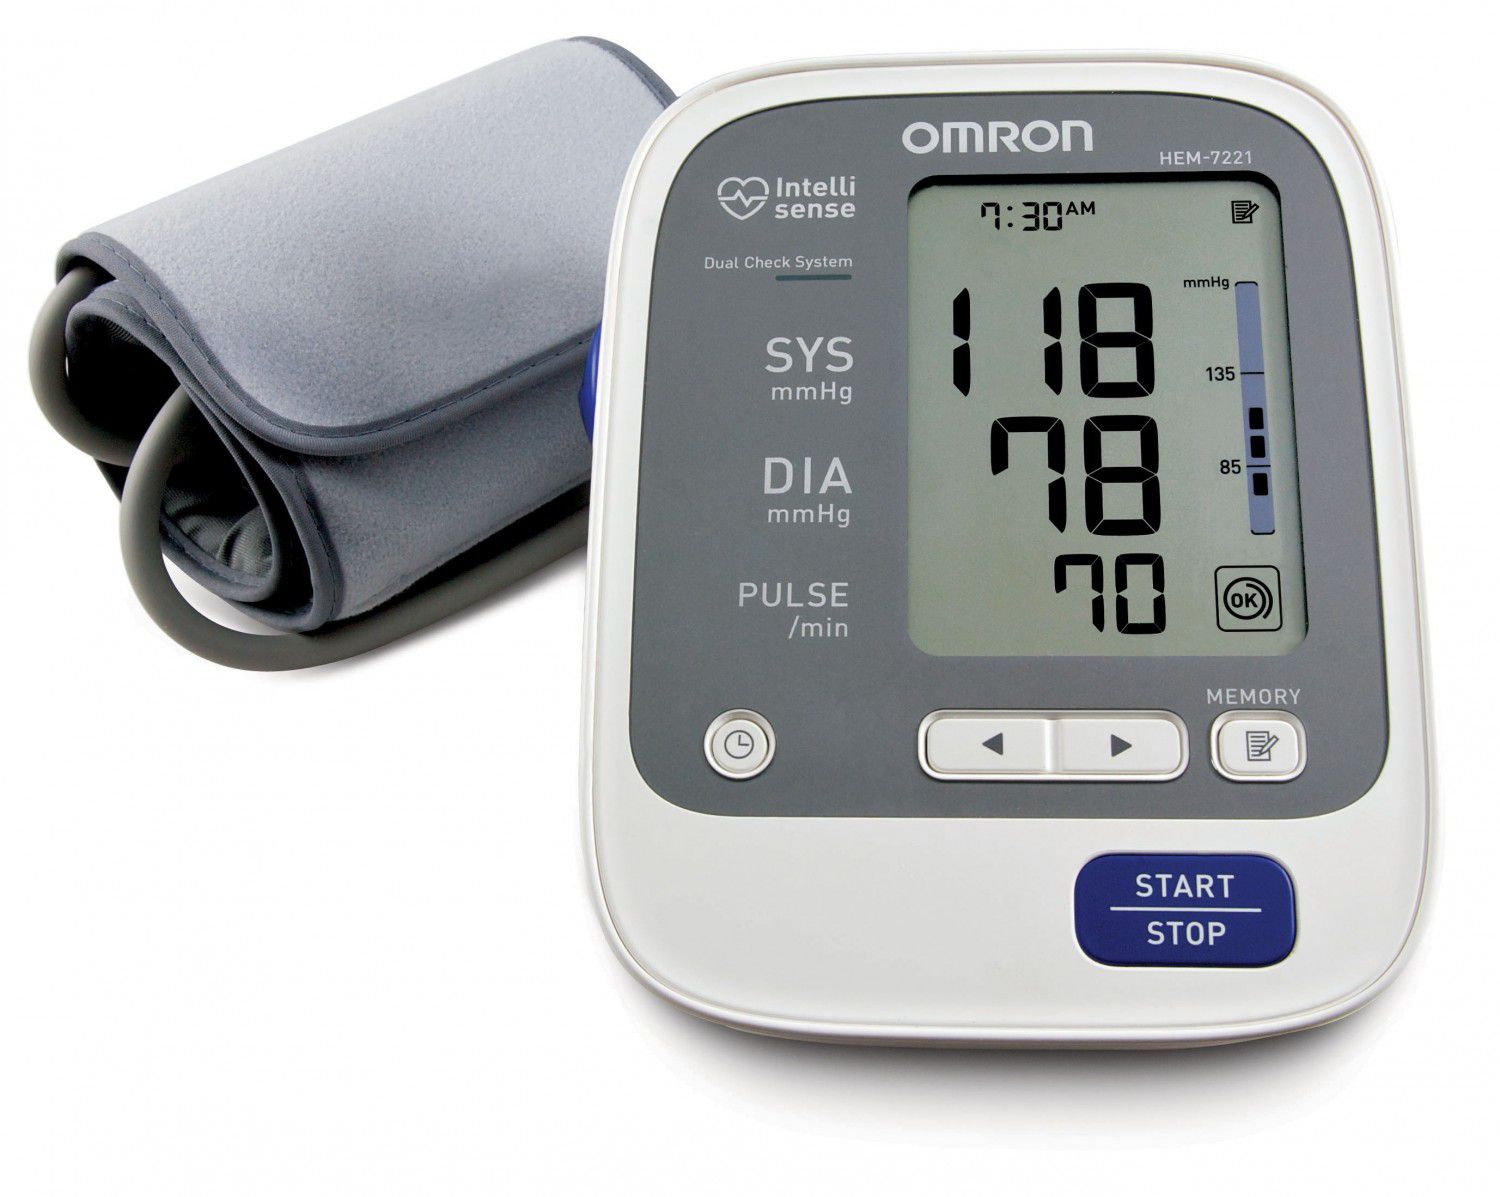 Sở hữu máy đo đường huyết tại nhà là rất hữu ích và nắm rõ cách sử dụng để đo hằng ngày nhằm đạt hiệu quả tối ưu